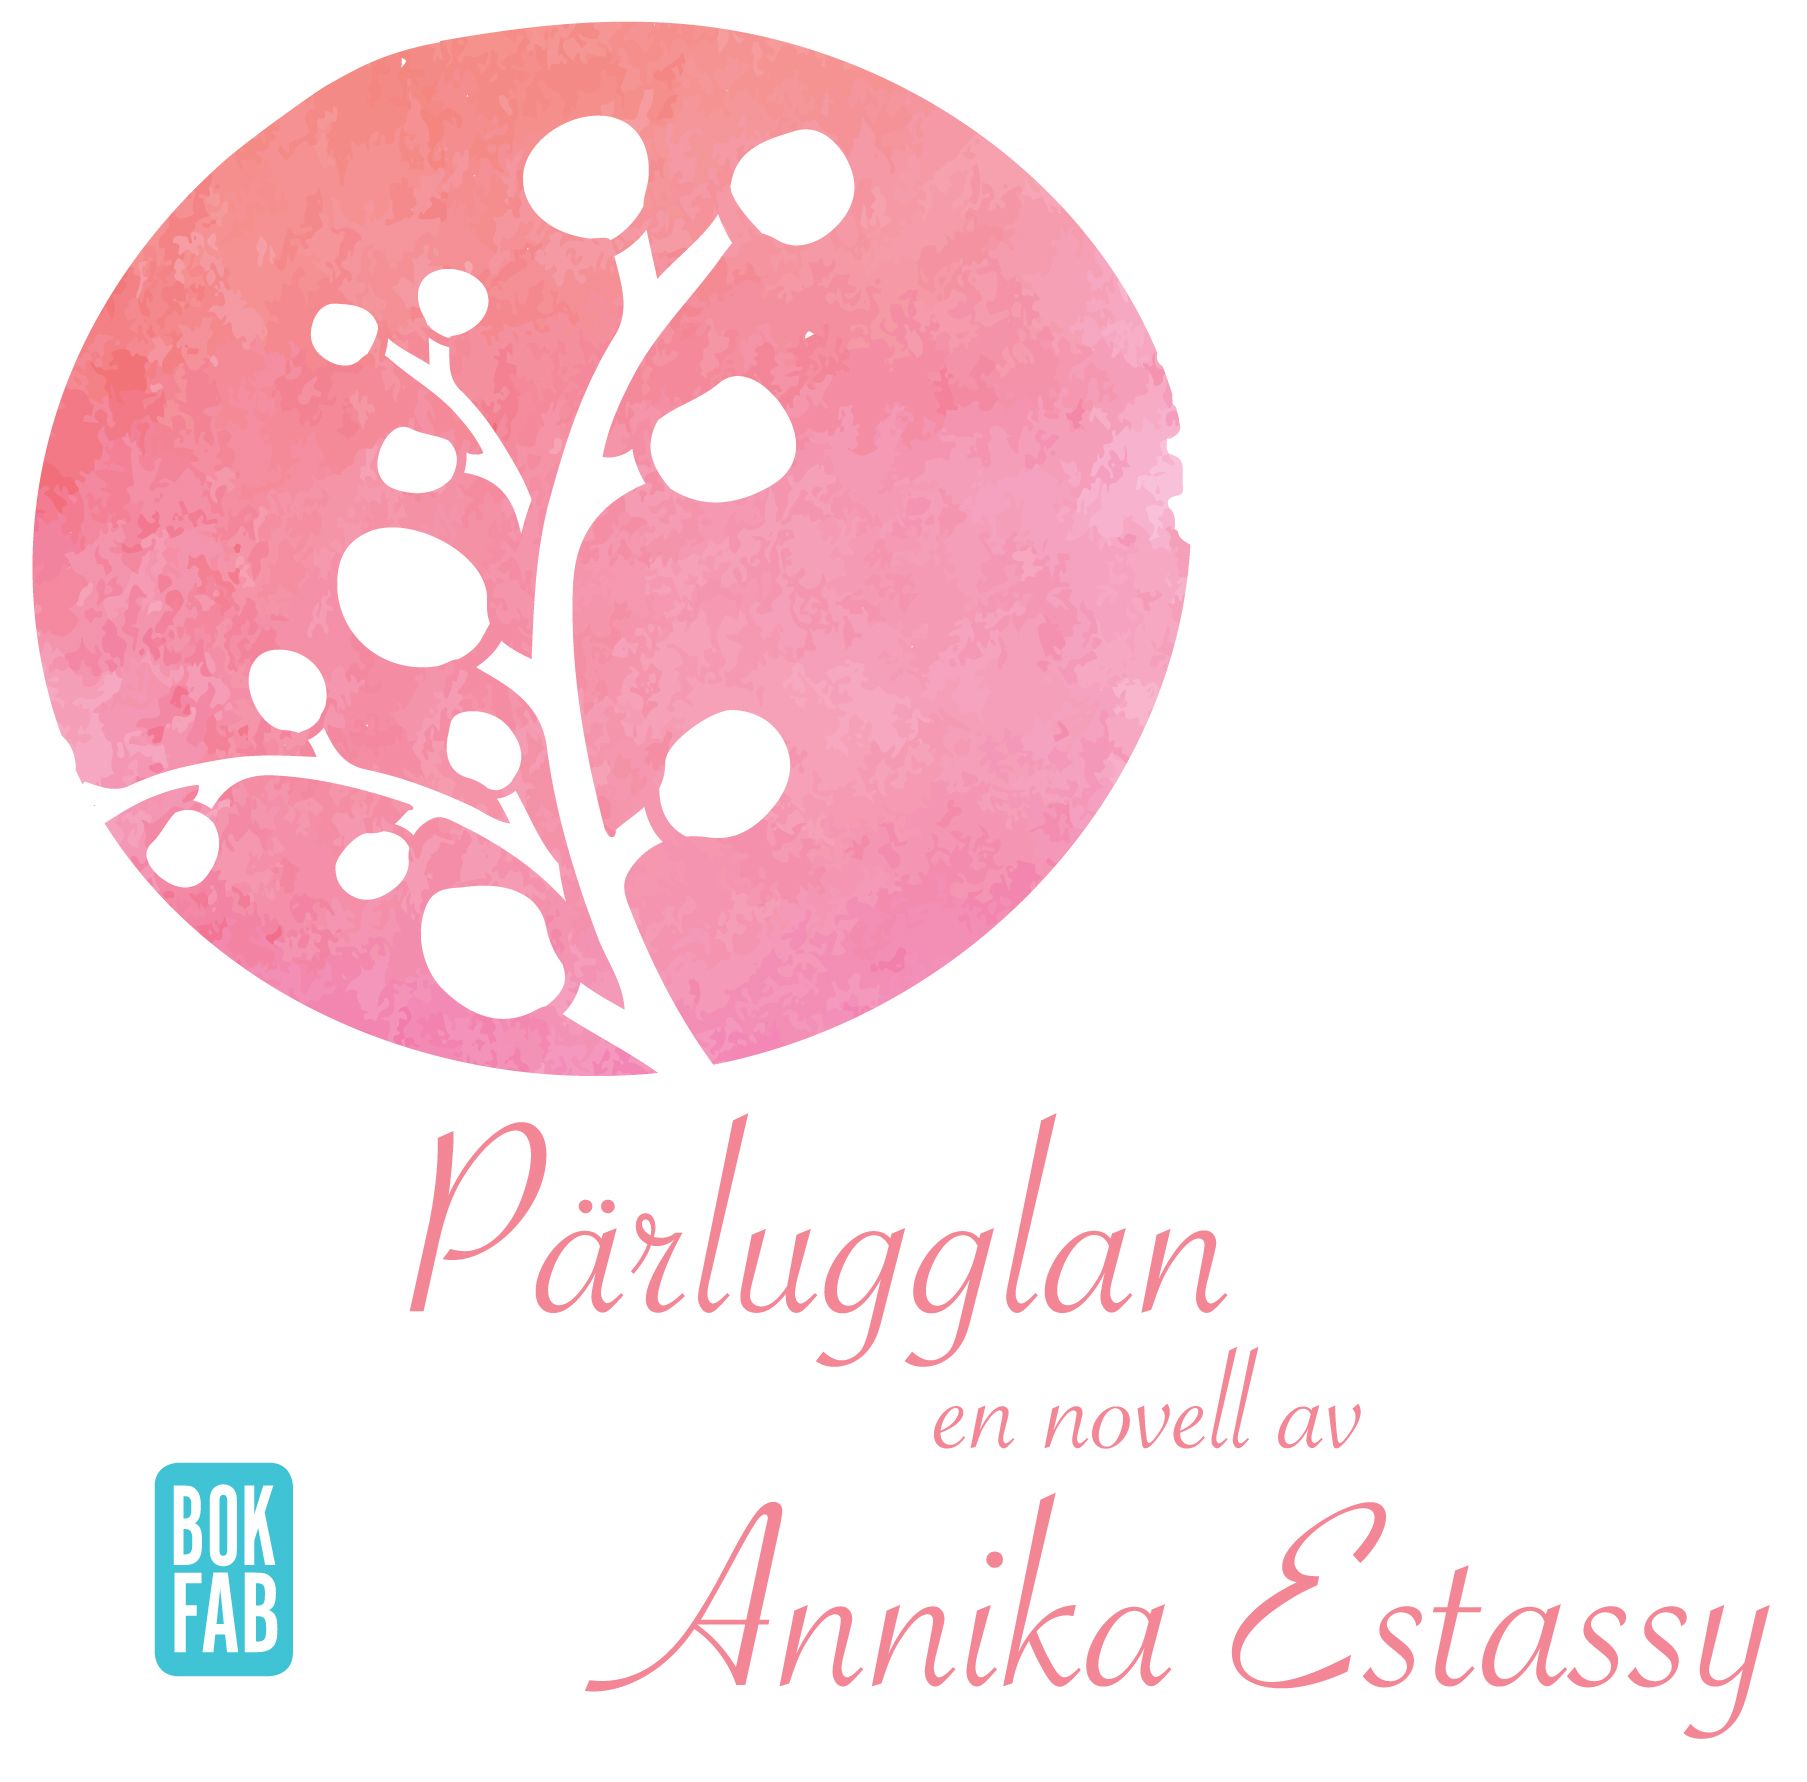 Pärlugglan, ljudbok av Annika Estassy